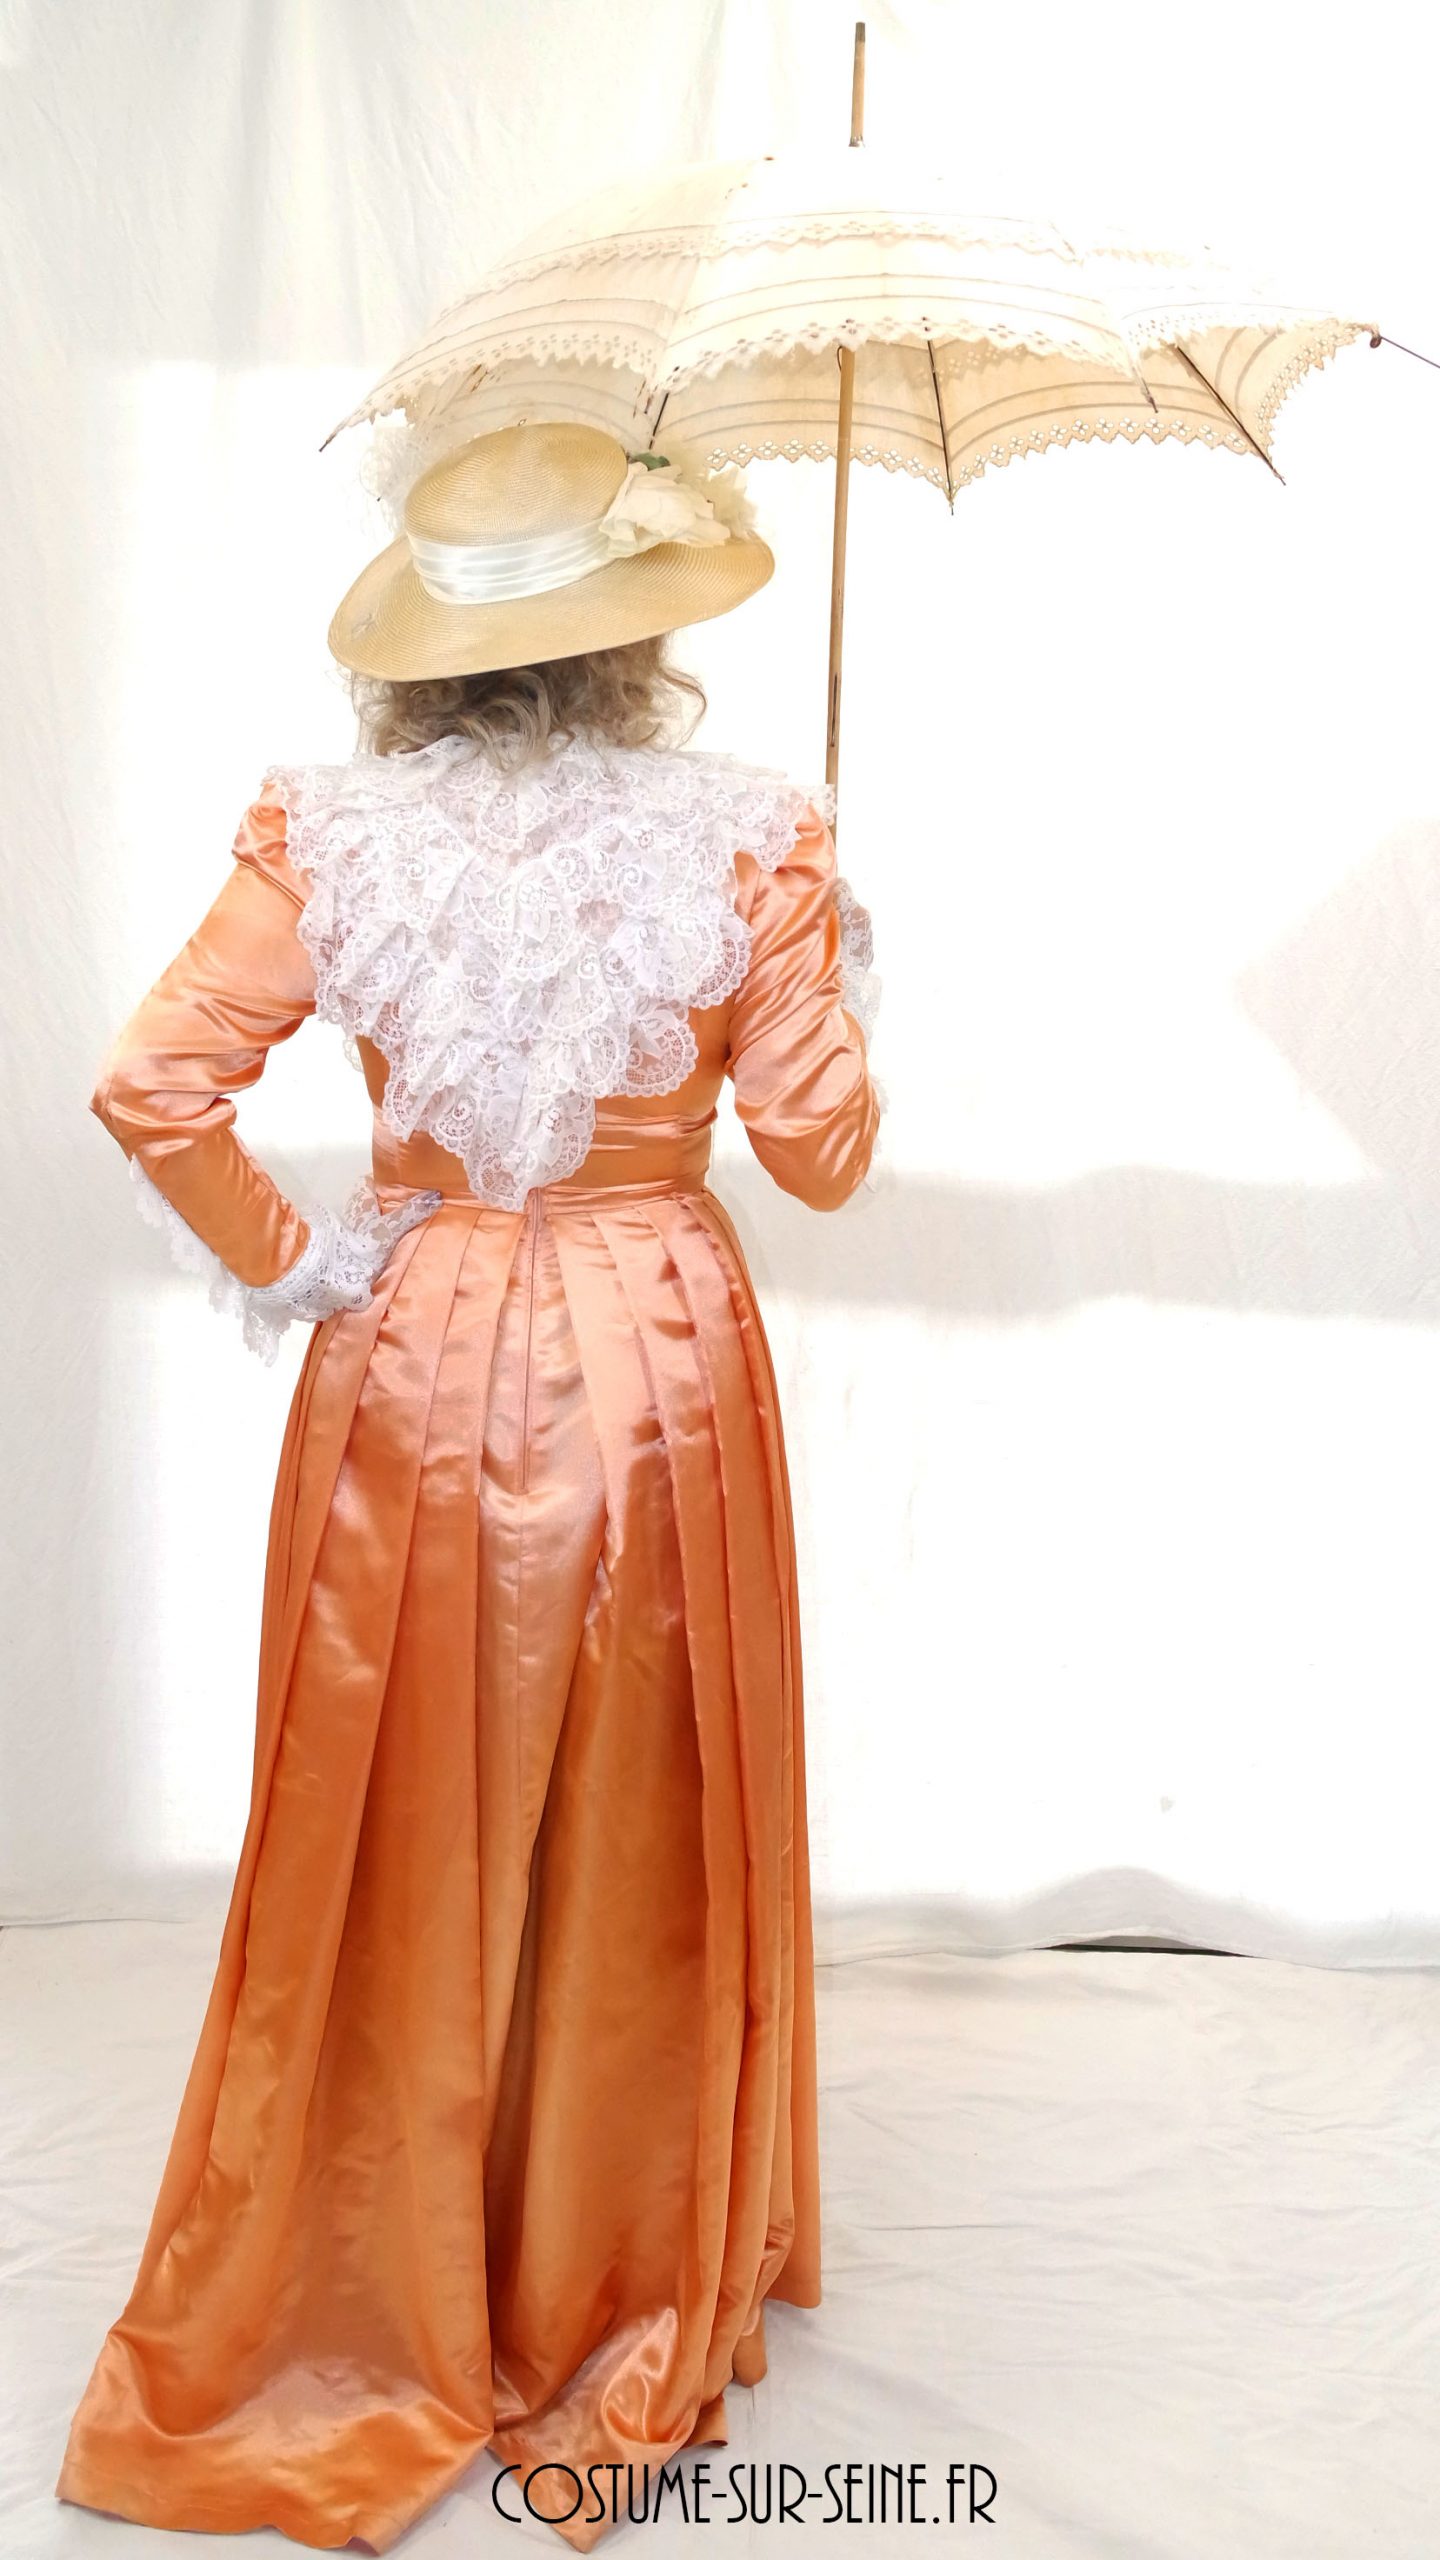 Robe 1900 satiné et dentelle - costume sur seine